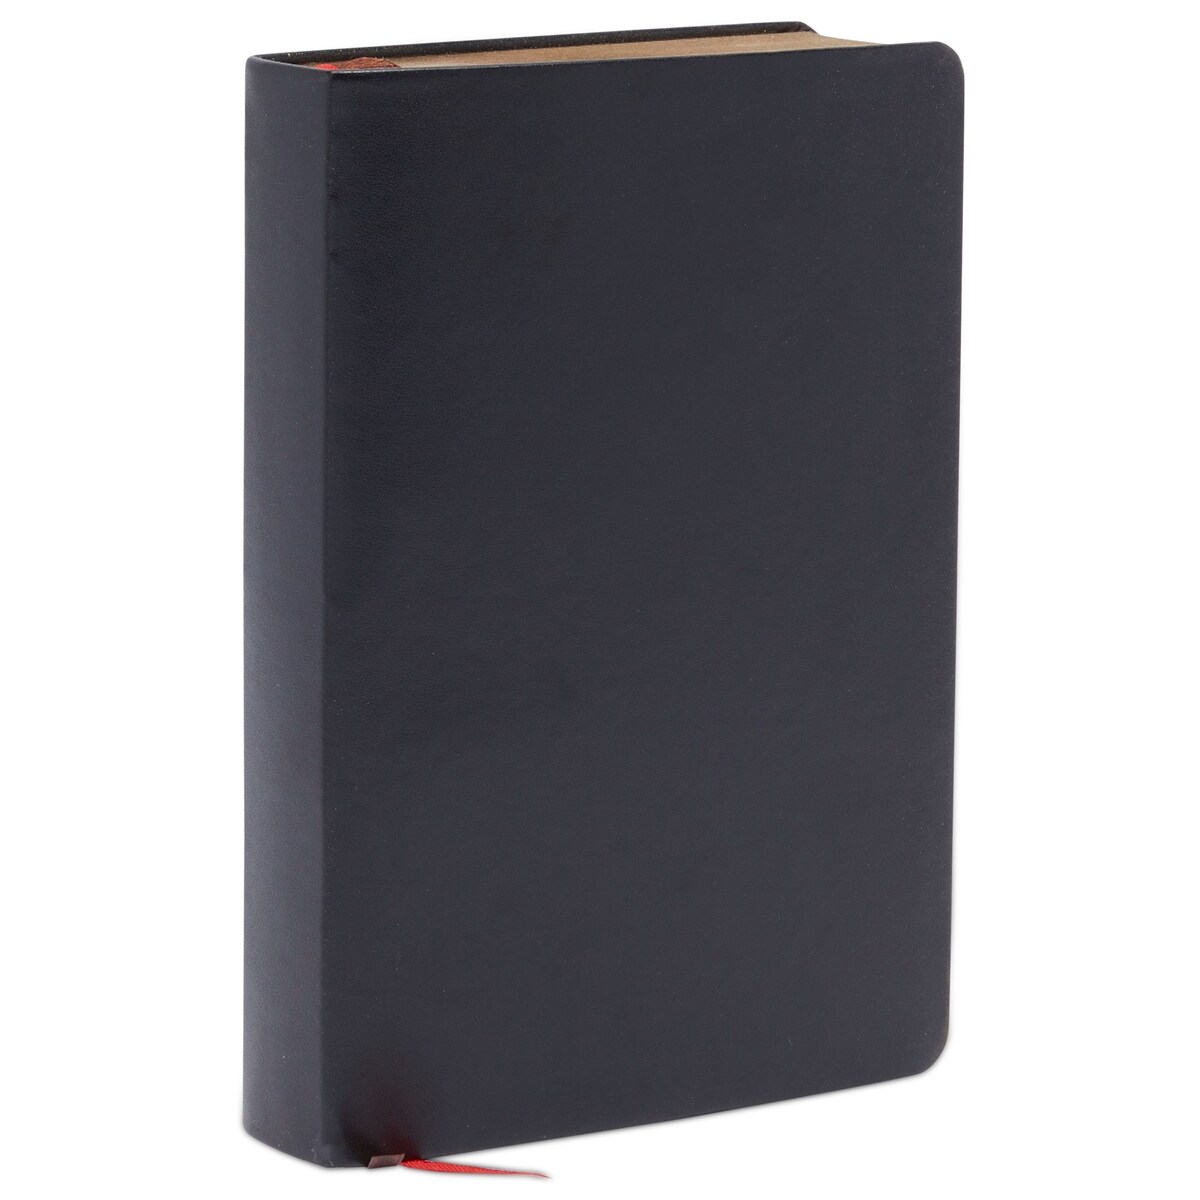 Large Sketchbook - Black, Art Sketch Book with Vegan Leather Hardcover